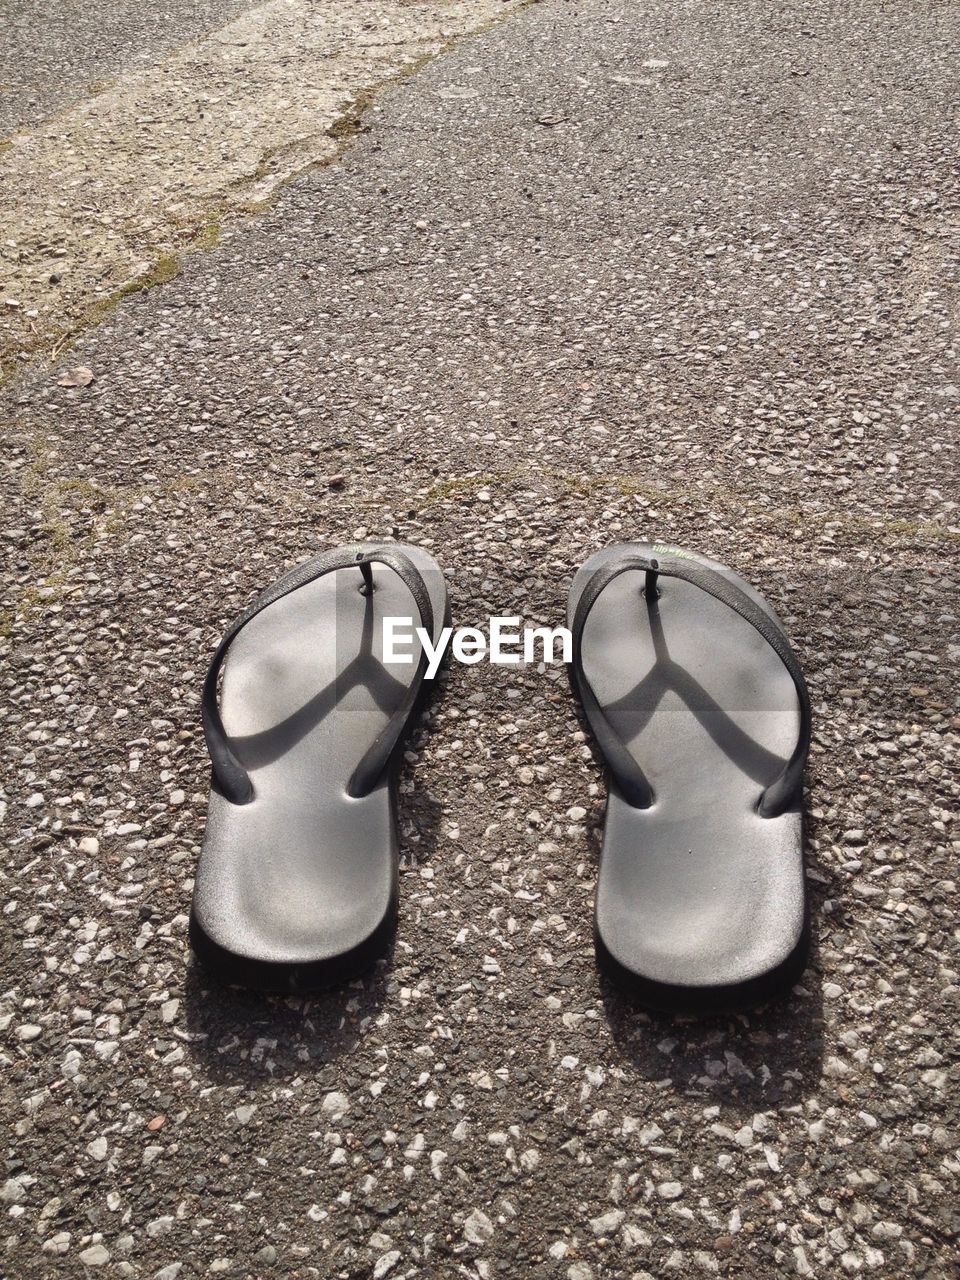 Pair of flip flops on road